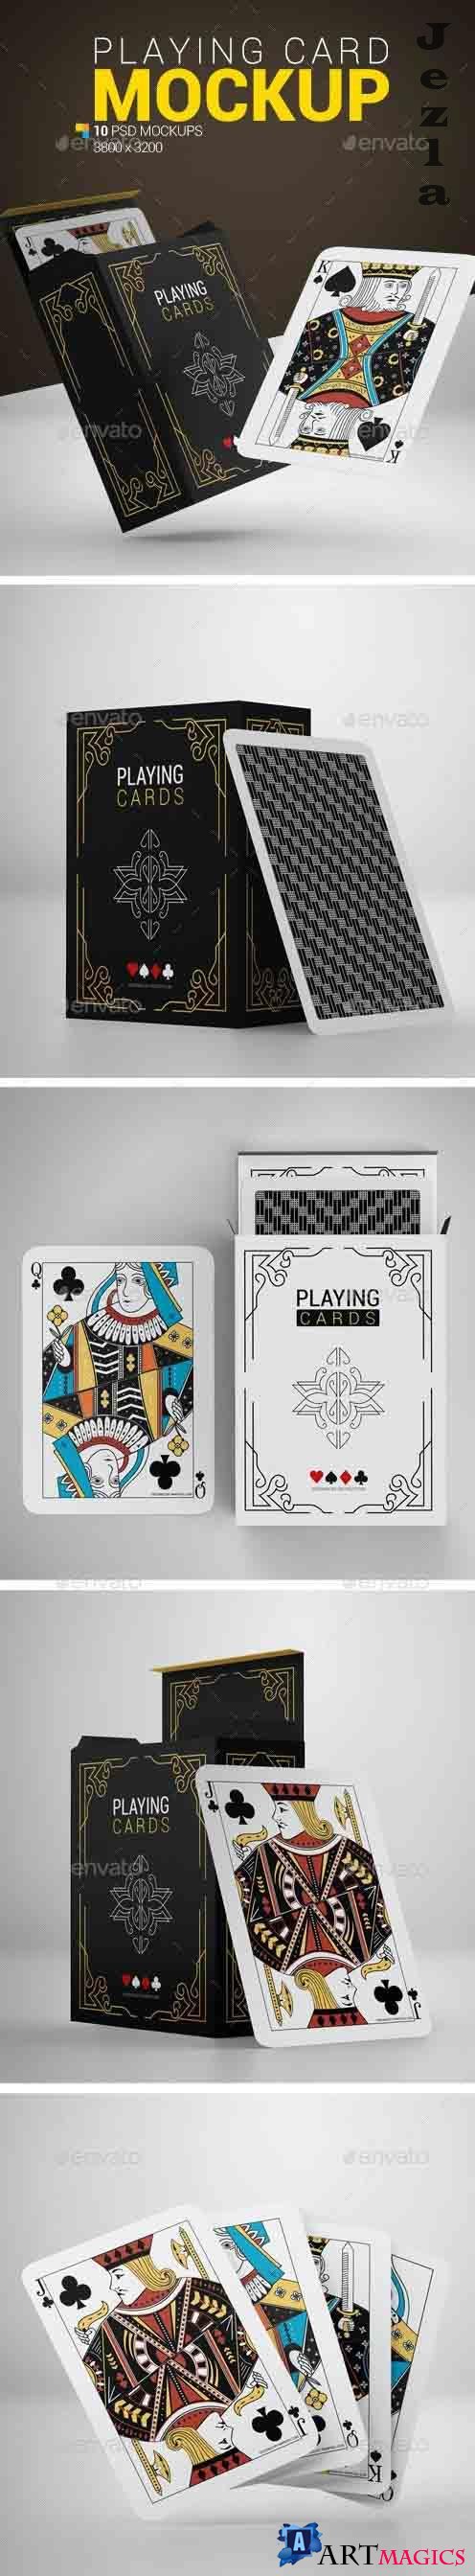 Playing Card Mockup - 24195014